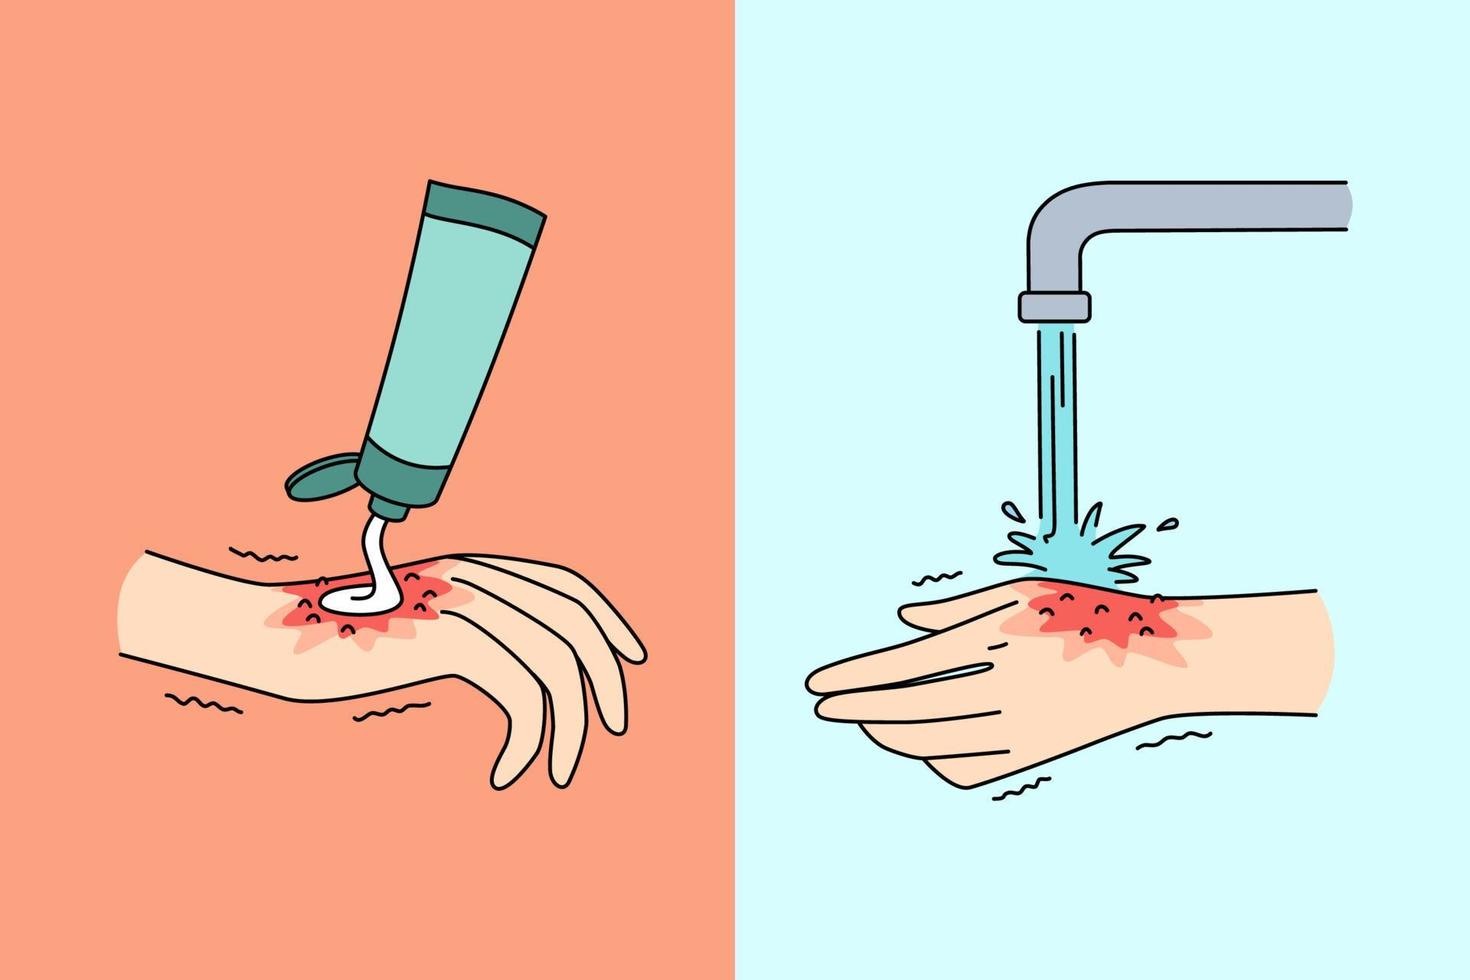 konzept für hygiene und reinigung der hände. menschliche hand, die creme aufträgt und mit wasser aus der hahnreinigung wäscht, um die tägliche hygiene zu sparen und verletzungsvektorillustration zu heilen vektor